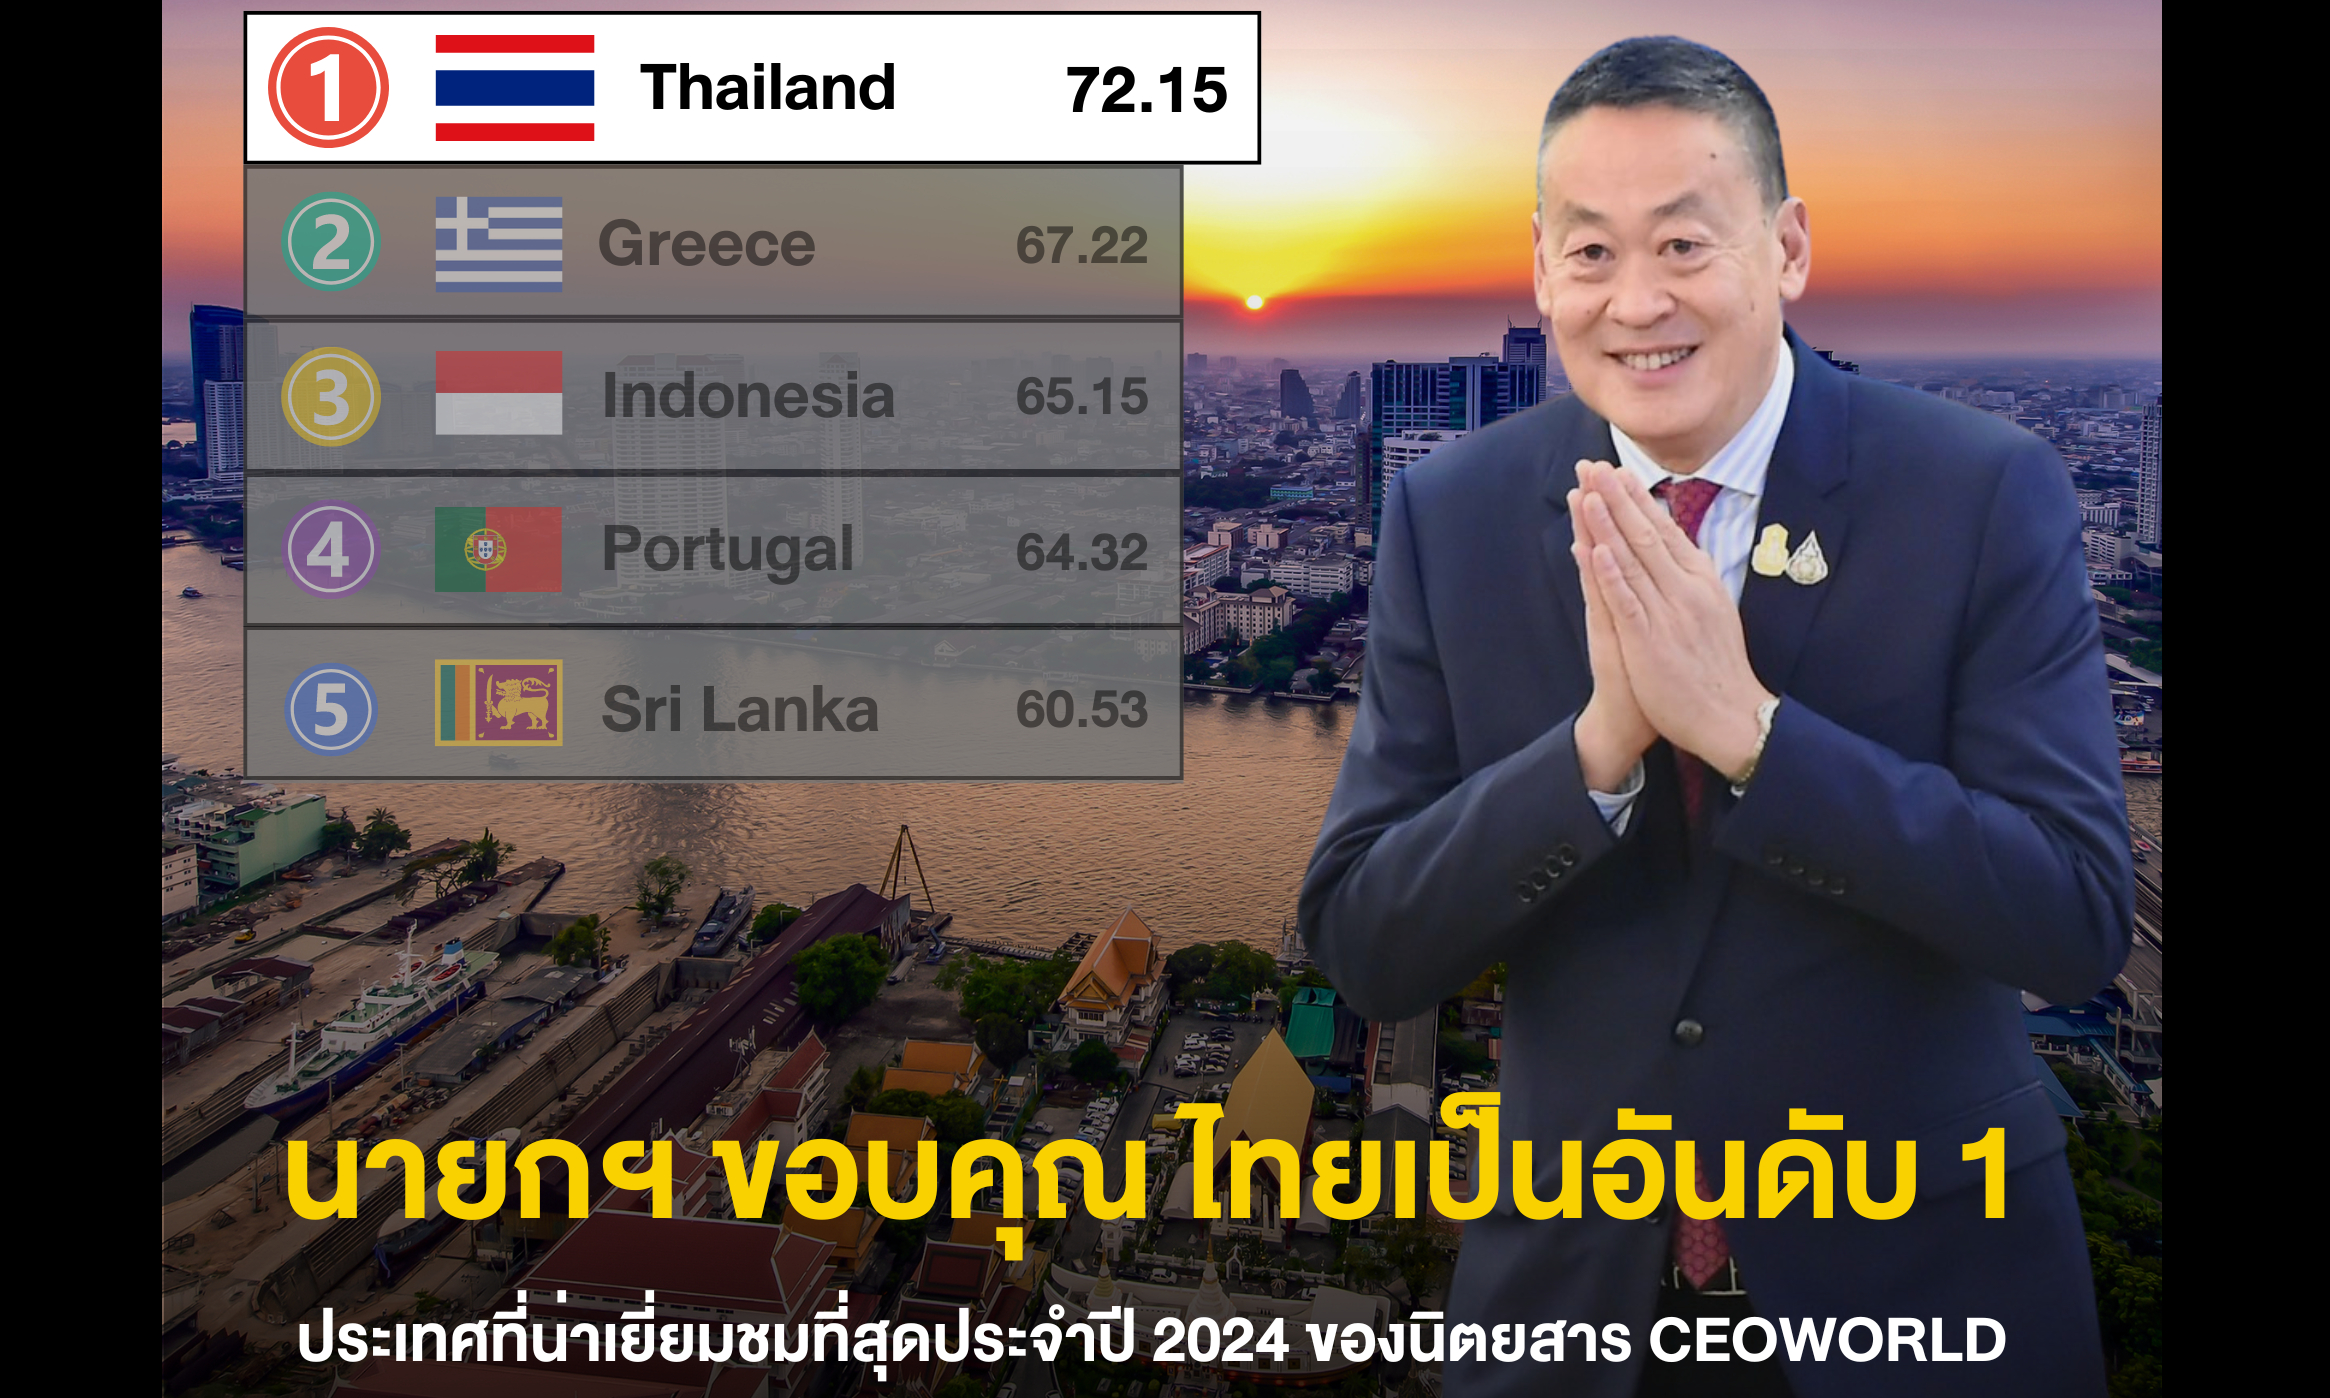 นายกฯ ขอบคุณ ผลการจัดอันดับให้ไทยเป็นอันดับ 1 ประเทศที่น่าเยี่ยมชมที่สุดประจำปี 2024 ของนิตยสาร CEOWORLD